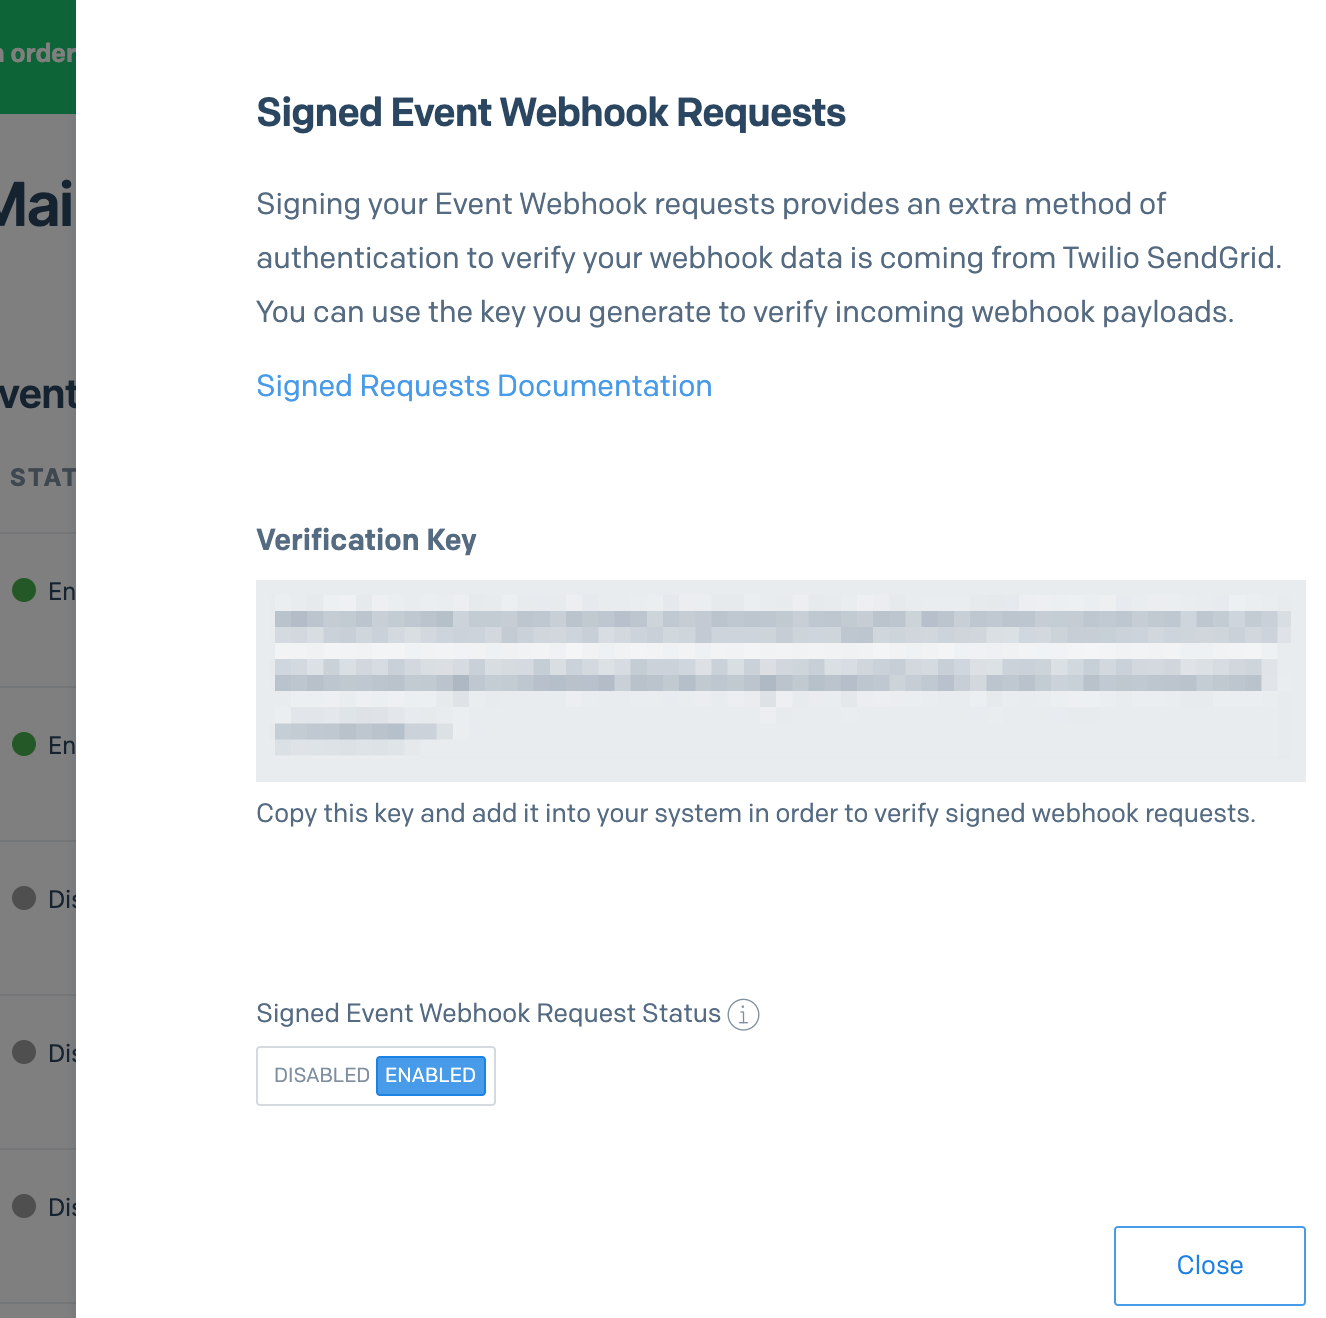 Enable SendGrid Signed Event Webhook Requests.